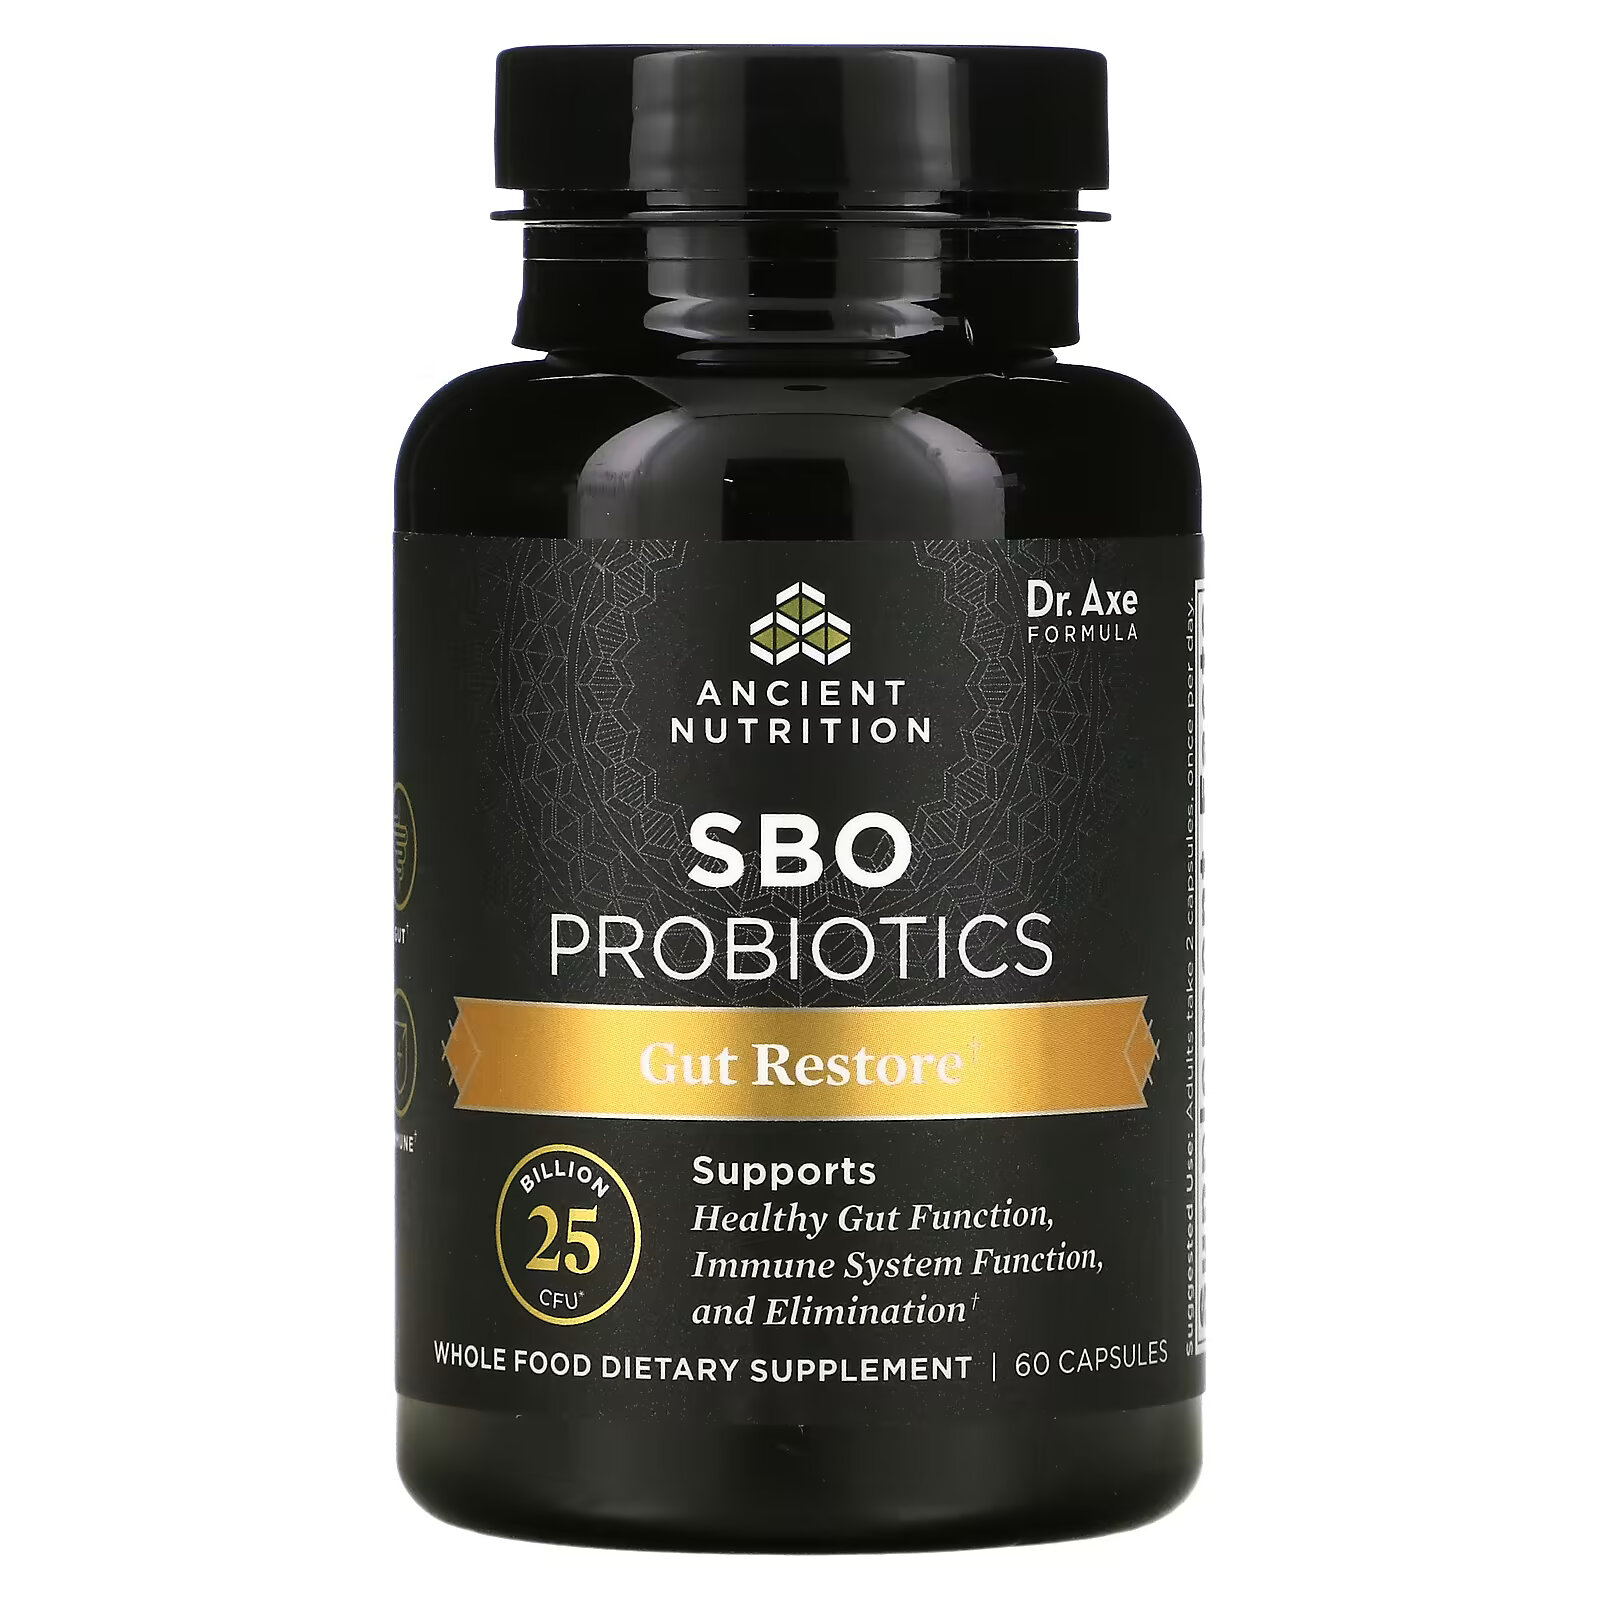 dr axe ancient nutrition sbo probiotics ultimate 50 млрд кое 60 капсул Dr. Axe / Ancient Nutrition, SBO Probiotics, средство для восстановления кишечника, 25 млрд КОЕ, 60 капсул